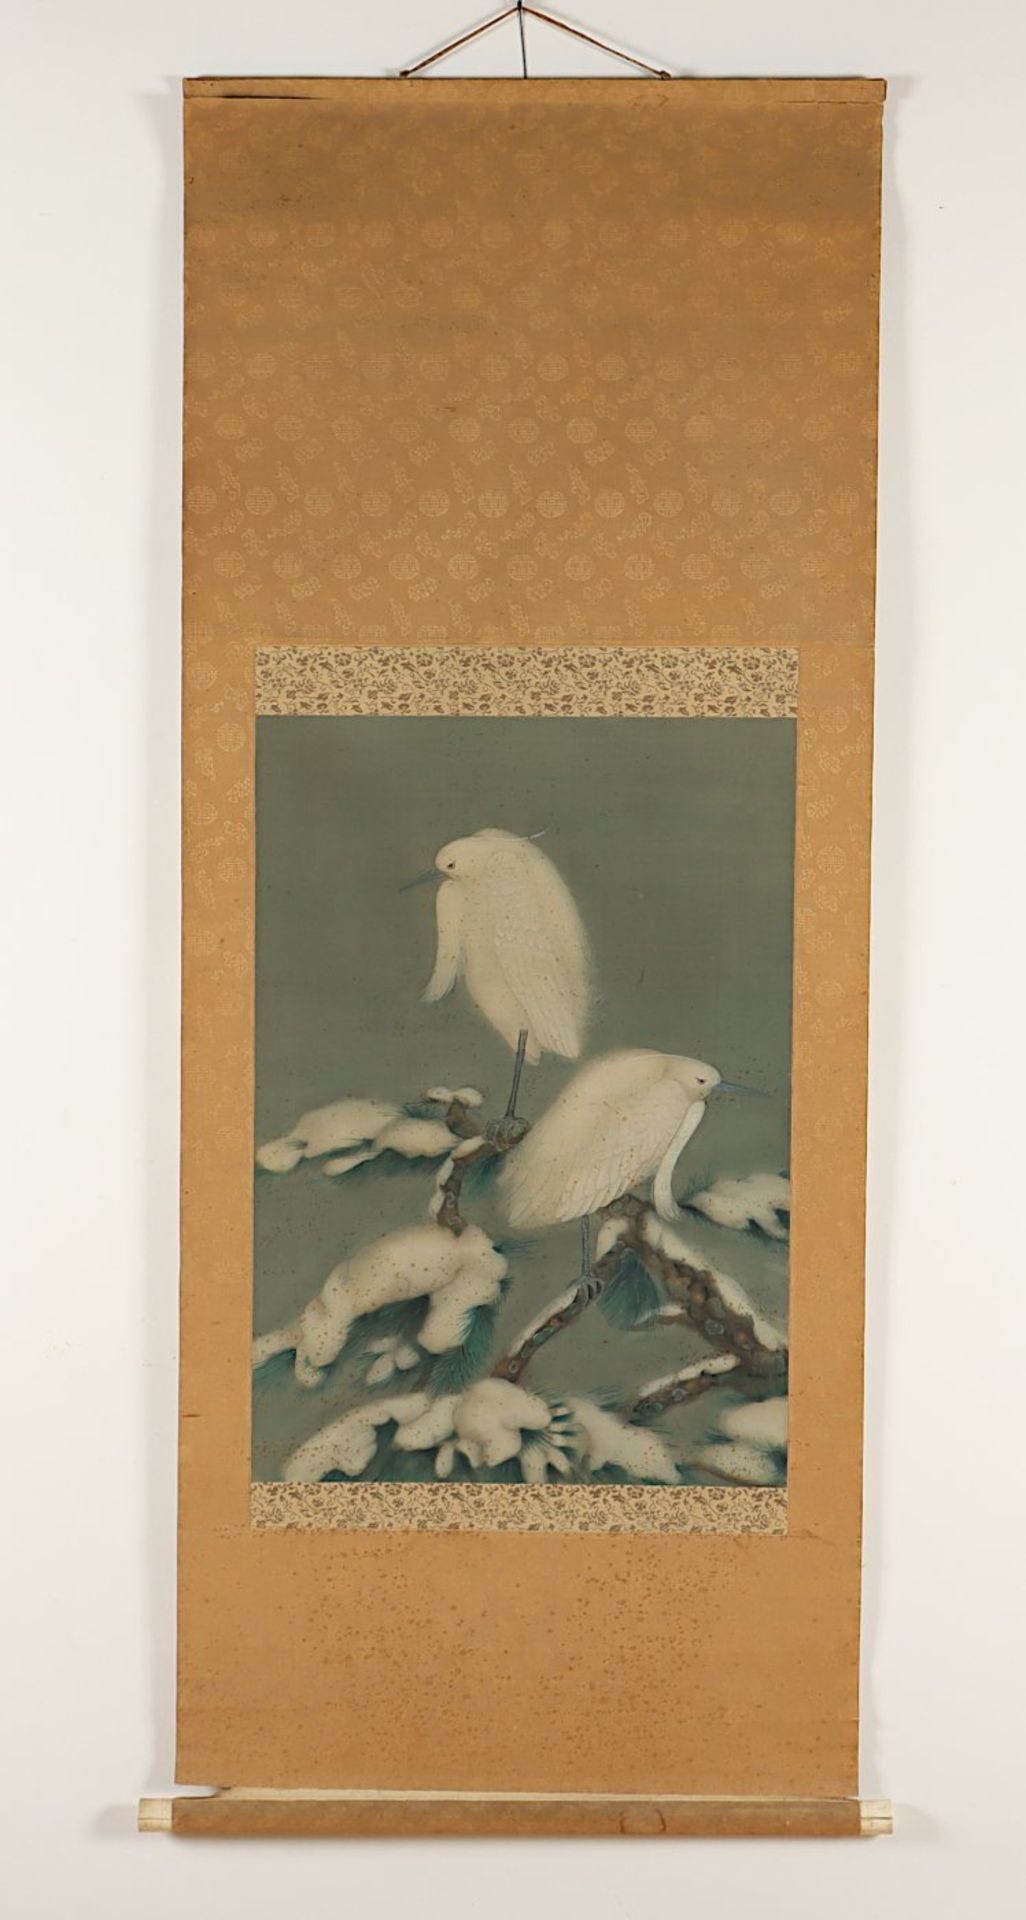 ROLLBILD, Tusche und Farben auf Papier, zwei Seidenreiher auf einem schneebedeckten Baum sitzend, 62 - Bild 2 aus 3